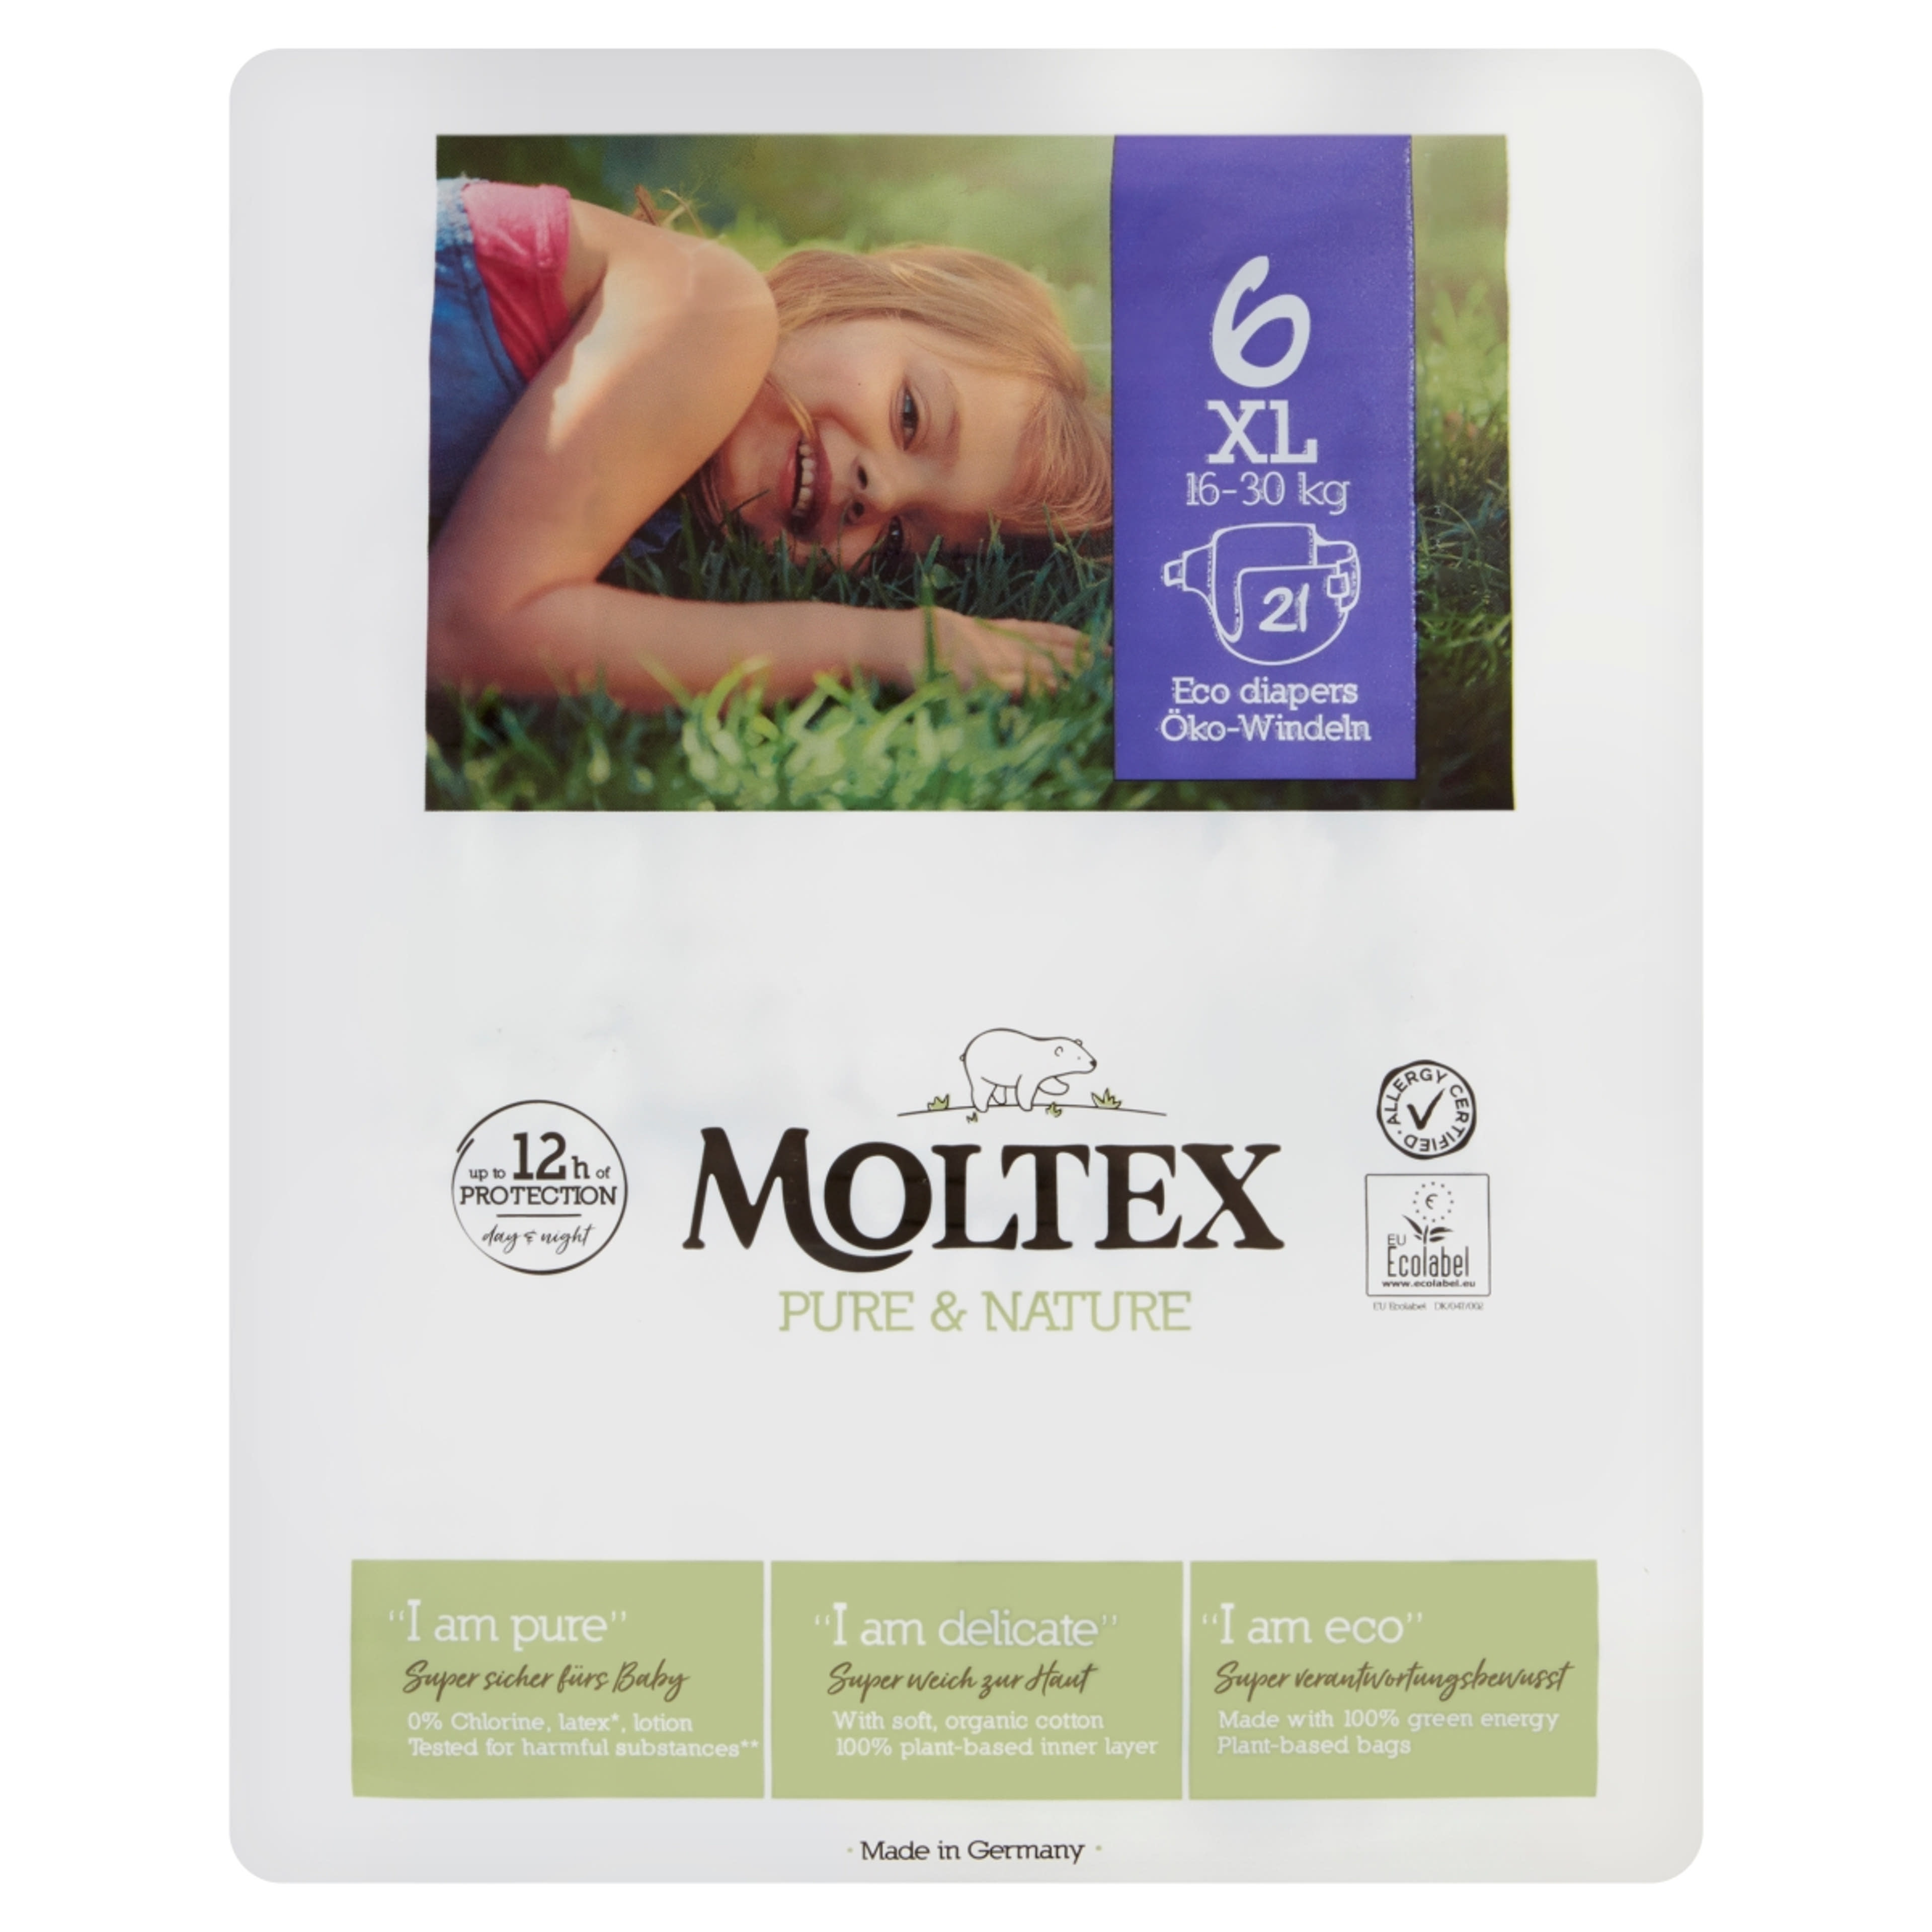 Moltex Pure&Nature XL öko pelenka 16-30 kg - 21 db